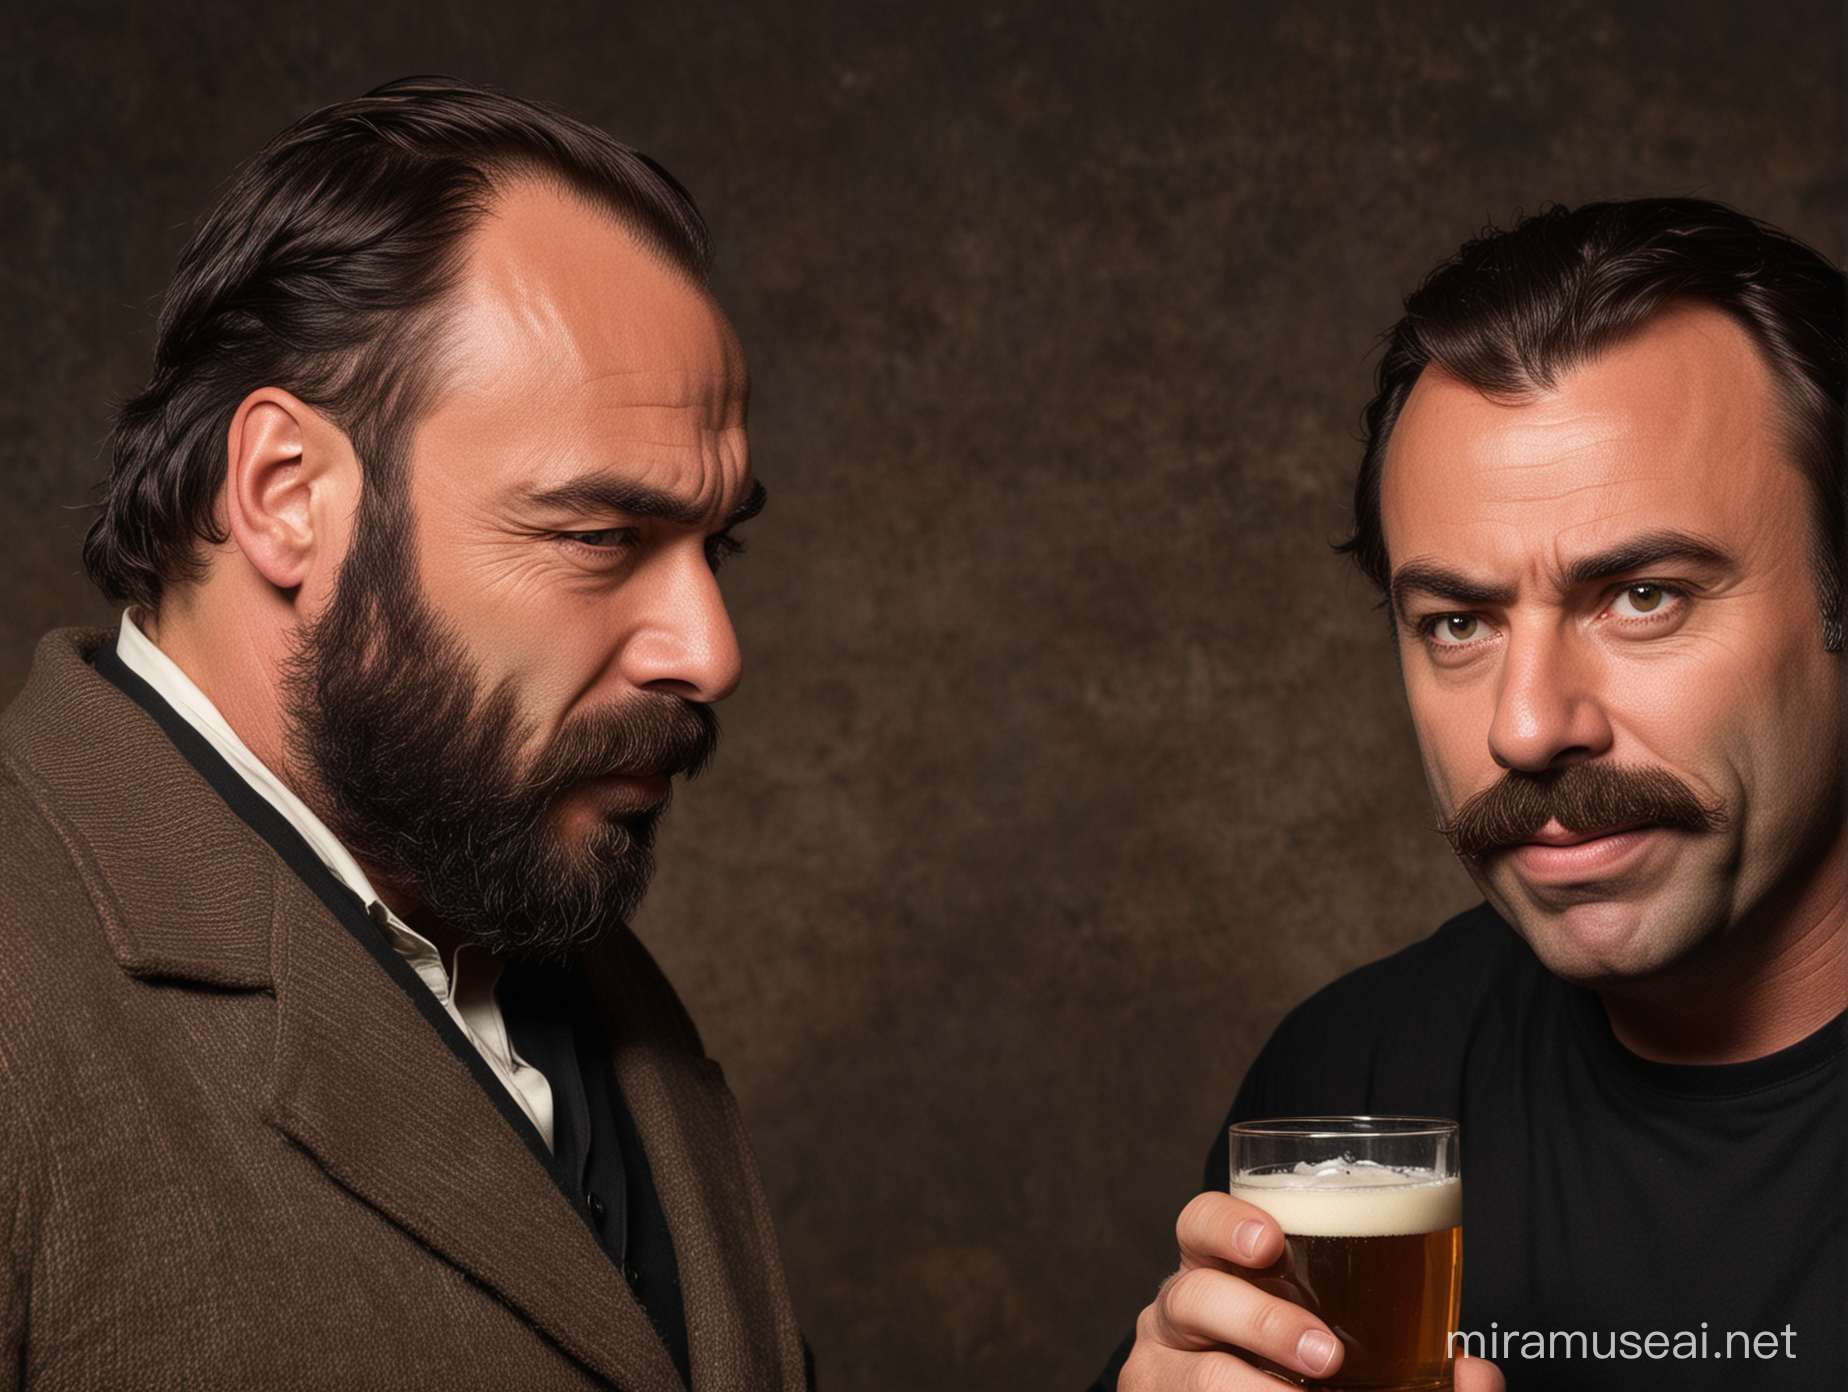 Joe Rogan and Friedrich Nietzsche Enjoy a Beer Together